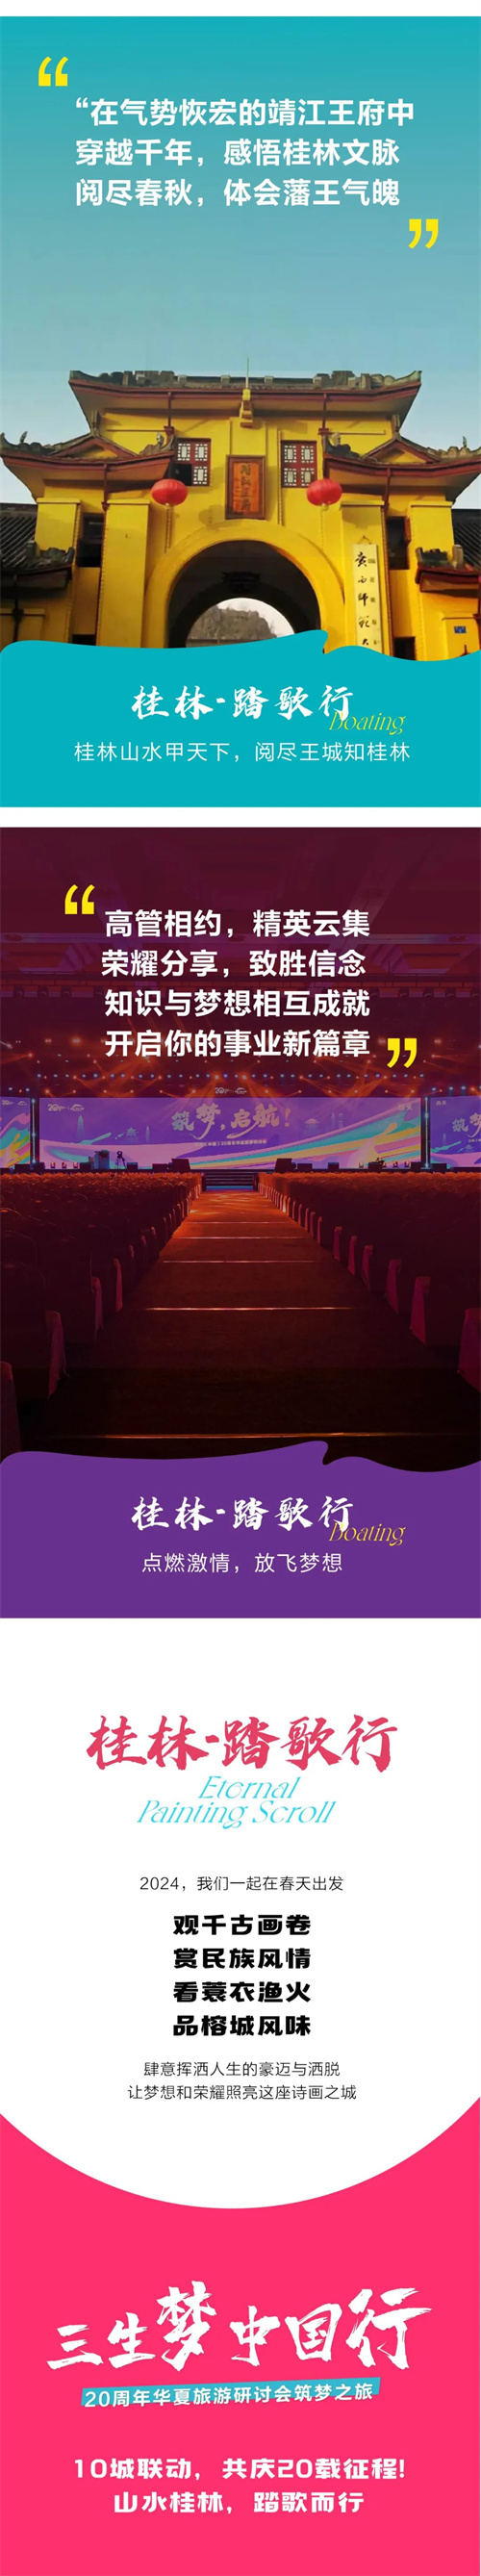 三生20周年华夏旅游研讨会筑梦之旅-桂林踏歌行将于3月开启